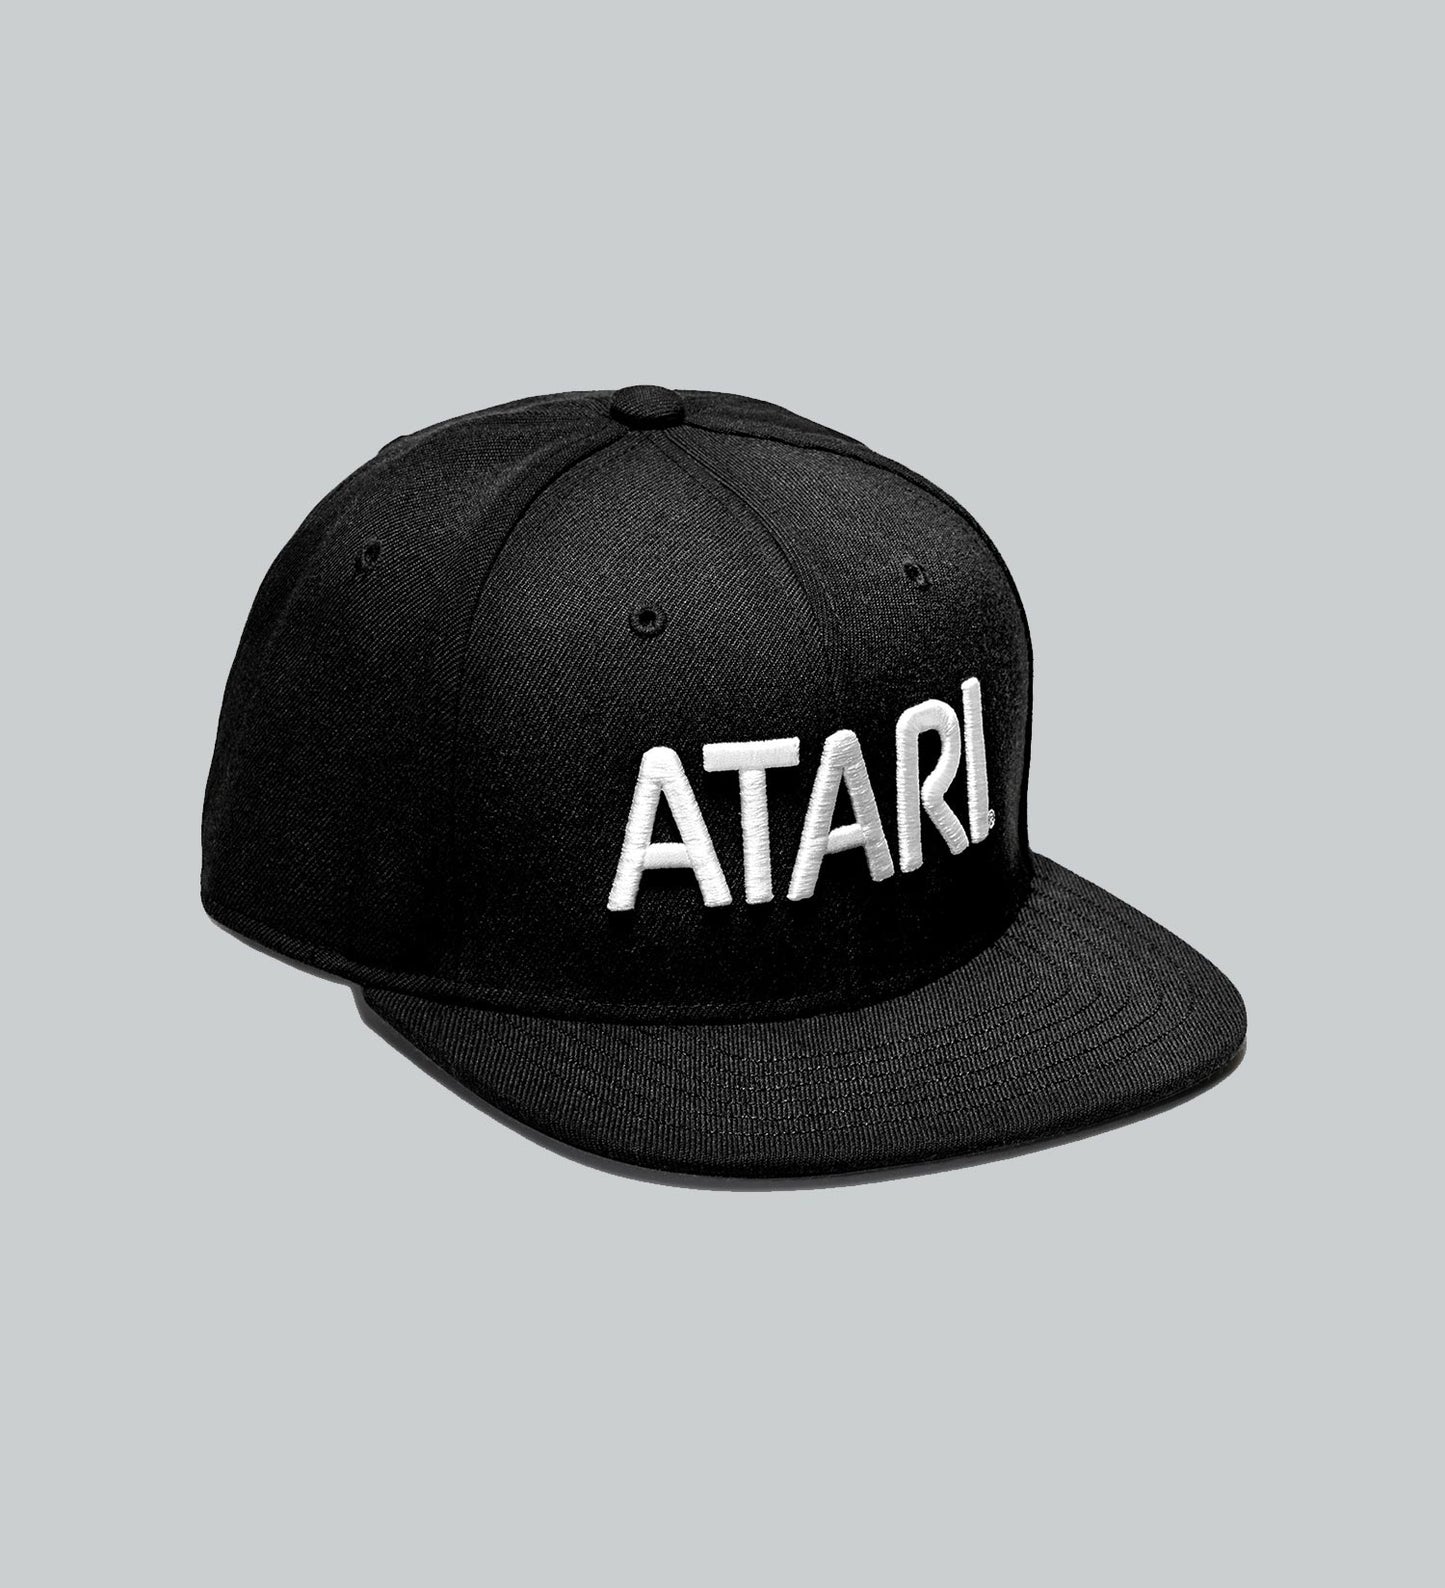 Atari Snapback Speakerhat